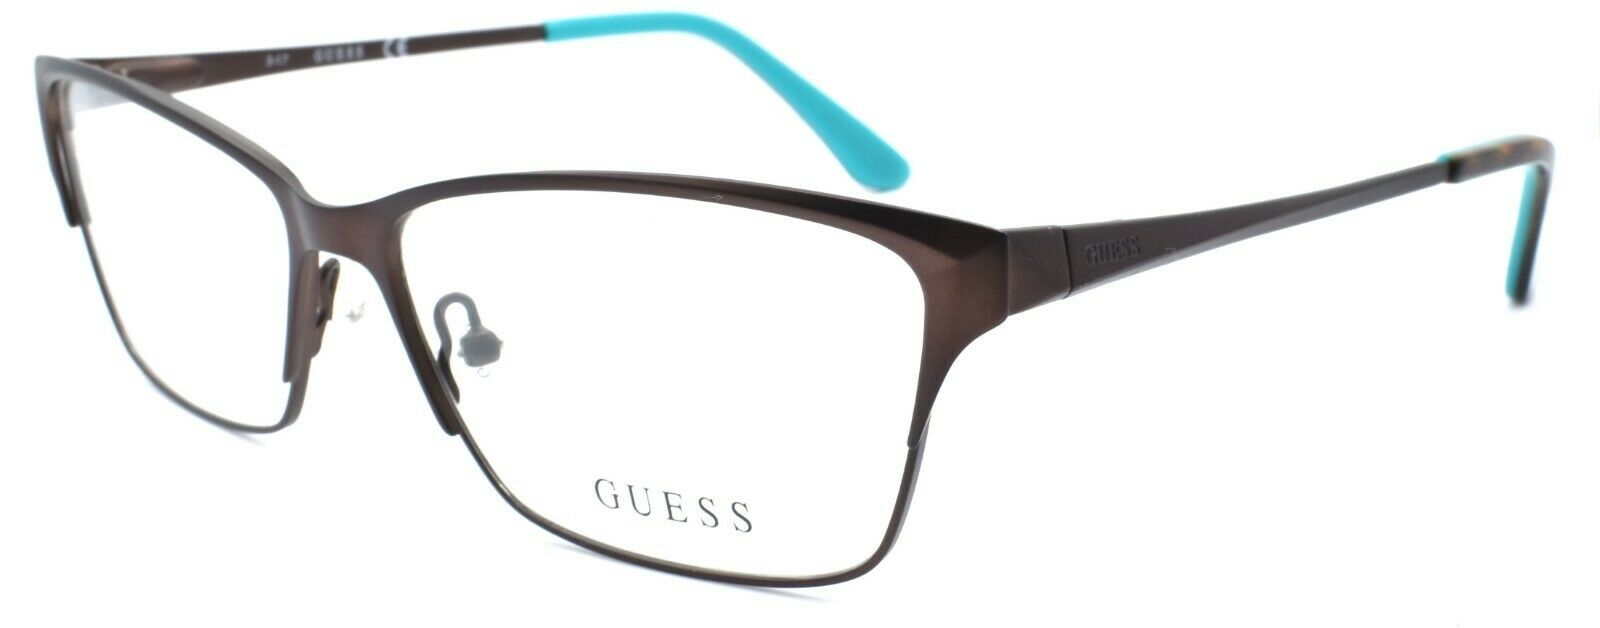 1-GUESS GU2605 049 Women's Eyeglasses Frames 55-14-140 Matte Dark Brown + CASE-664689884261-IKSpecs